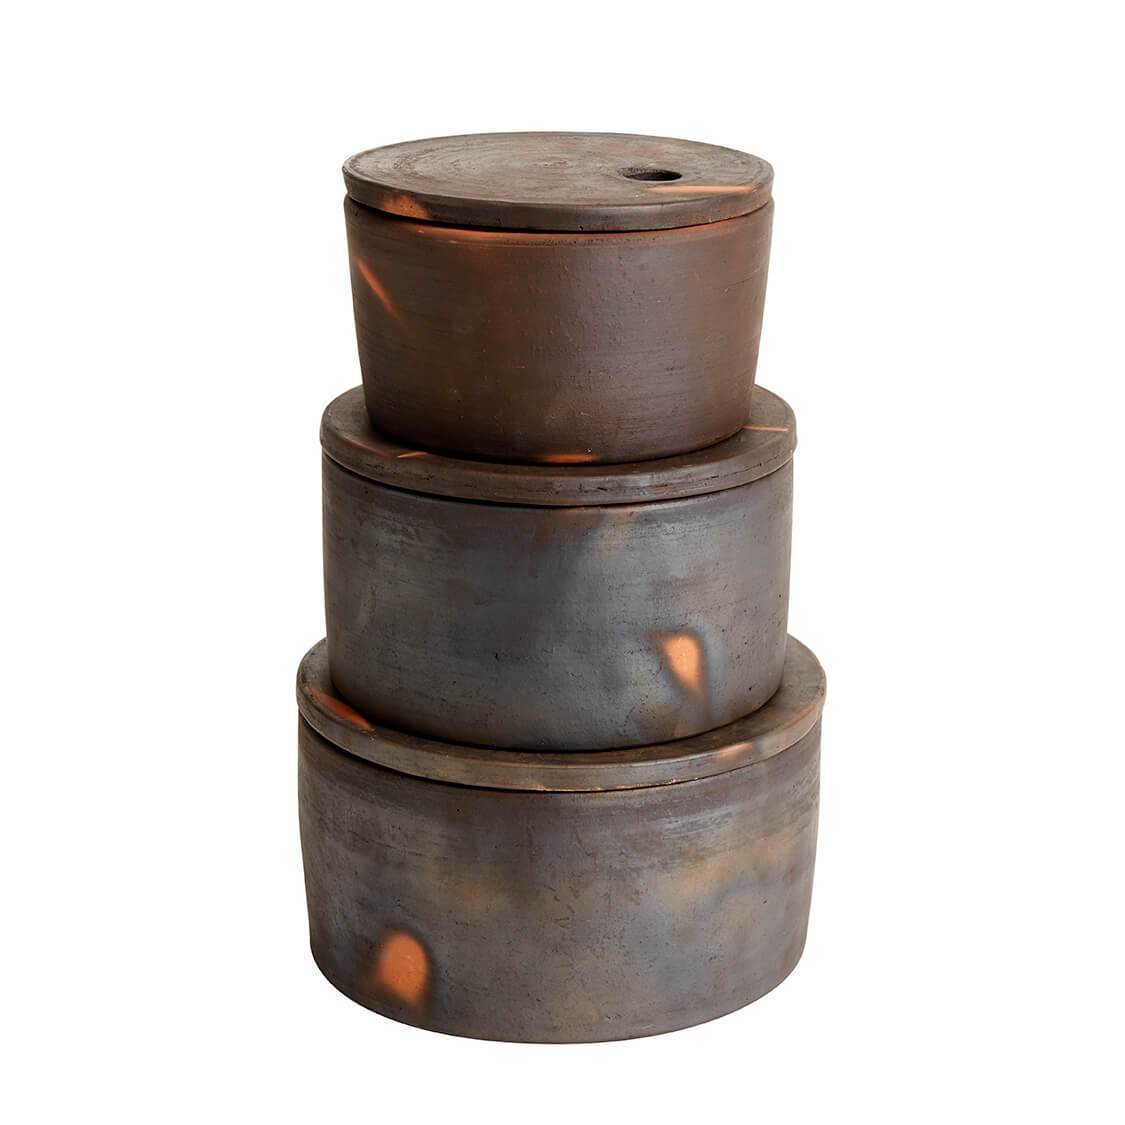 Muubs Hamel Storage Jar Terracotta, 23 cm